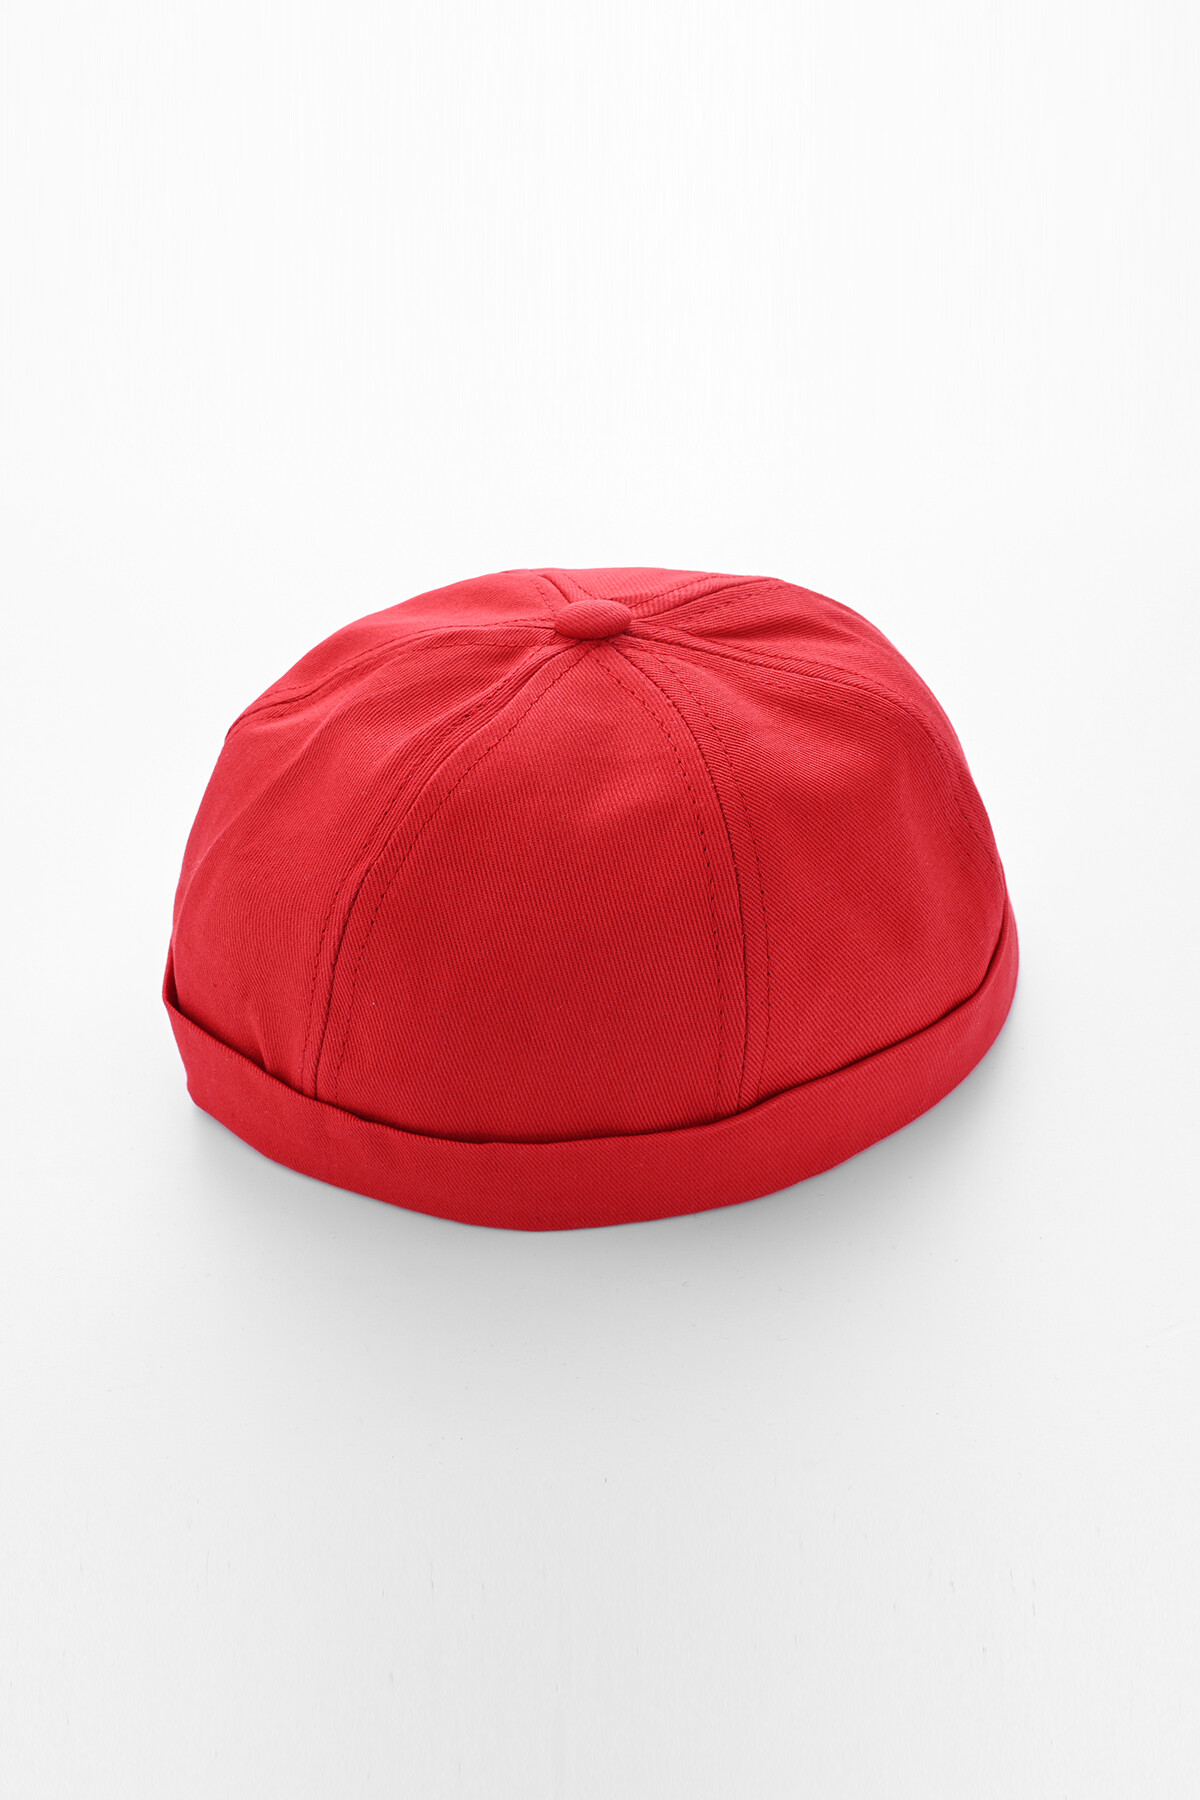 Retro Kırmızı Yazlık Şapka